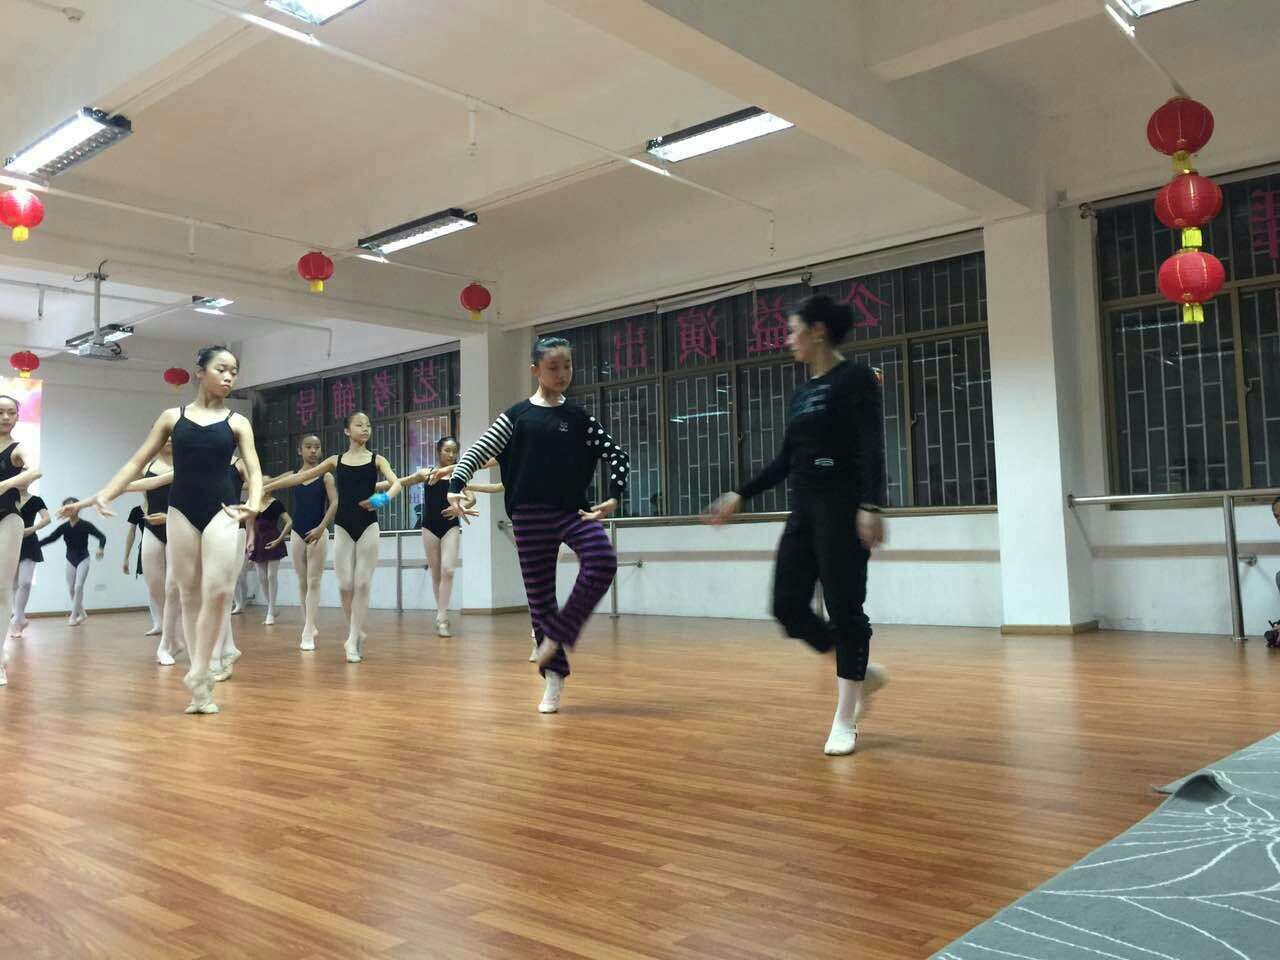 2015年1月29日晚深圳市十二月舞蹈艺术团和台湾方向舞蹈团的交流圆满成功